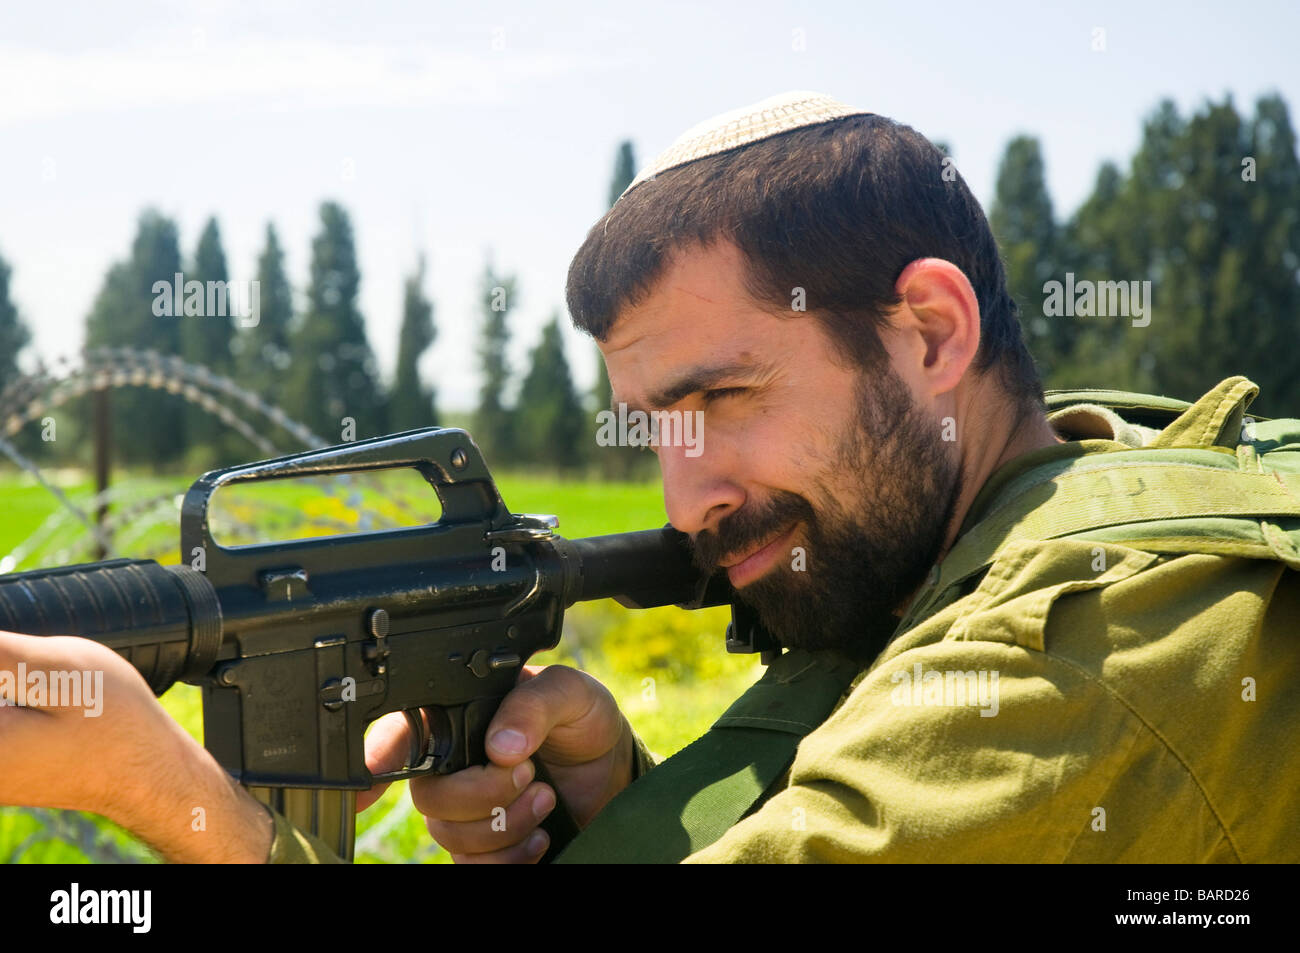 Israël Cisjordanie soldats de réserve israélien lors d'une patrouille à pied pendant le service actif Banque D'Images